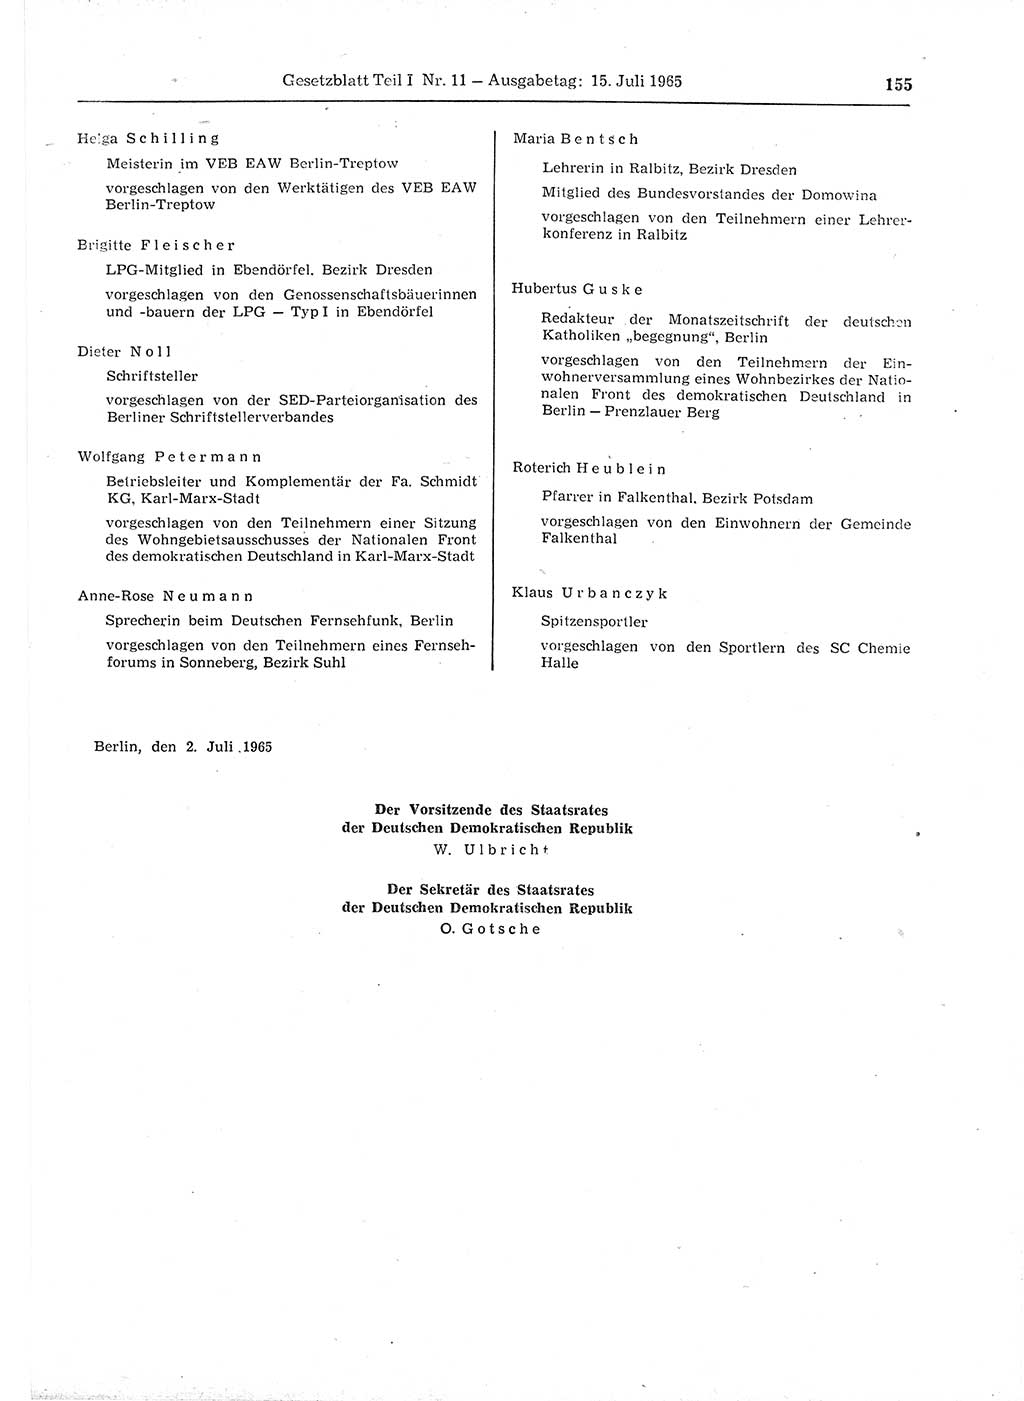 Gesetzblatt (GBl.) der Deutschen Demokratischen Republik (DDR) Teil Ⅰ 1965, Seite 155 (GBl. DDR Ⅰ 1965, S. 155)